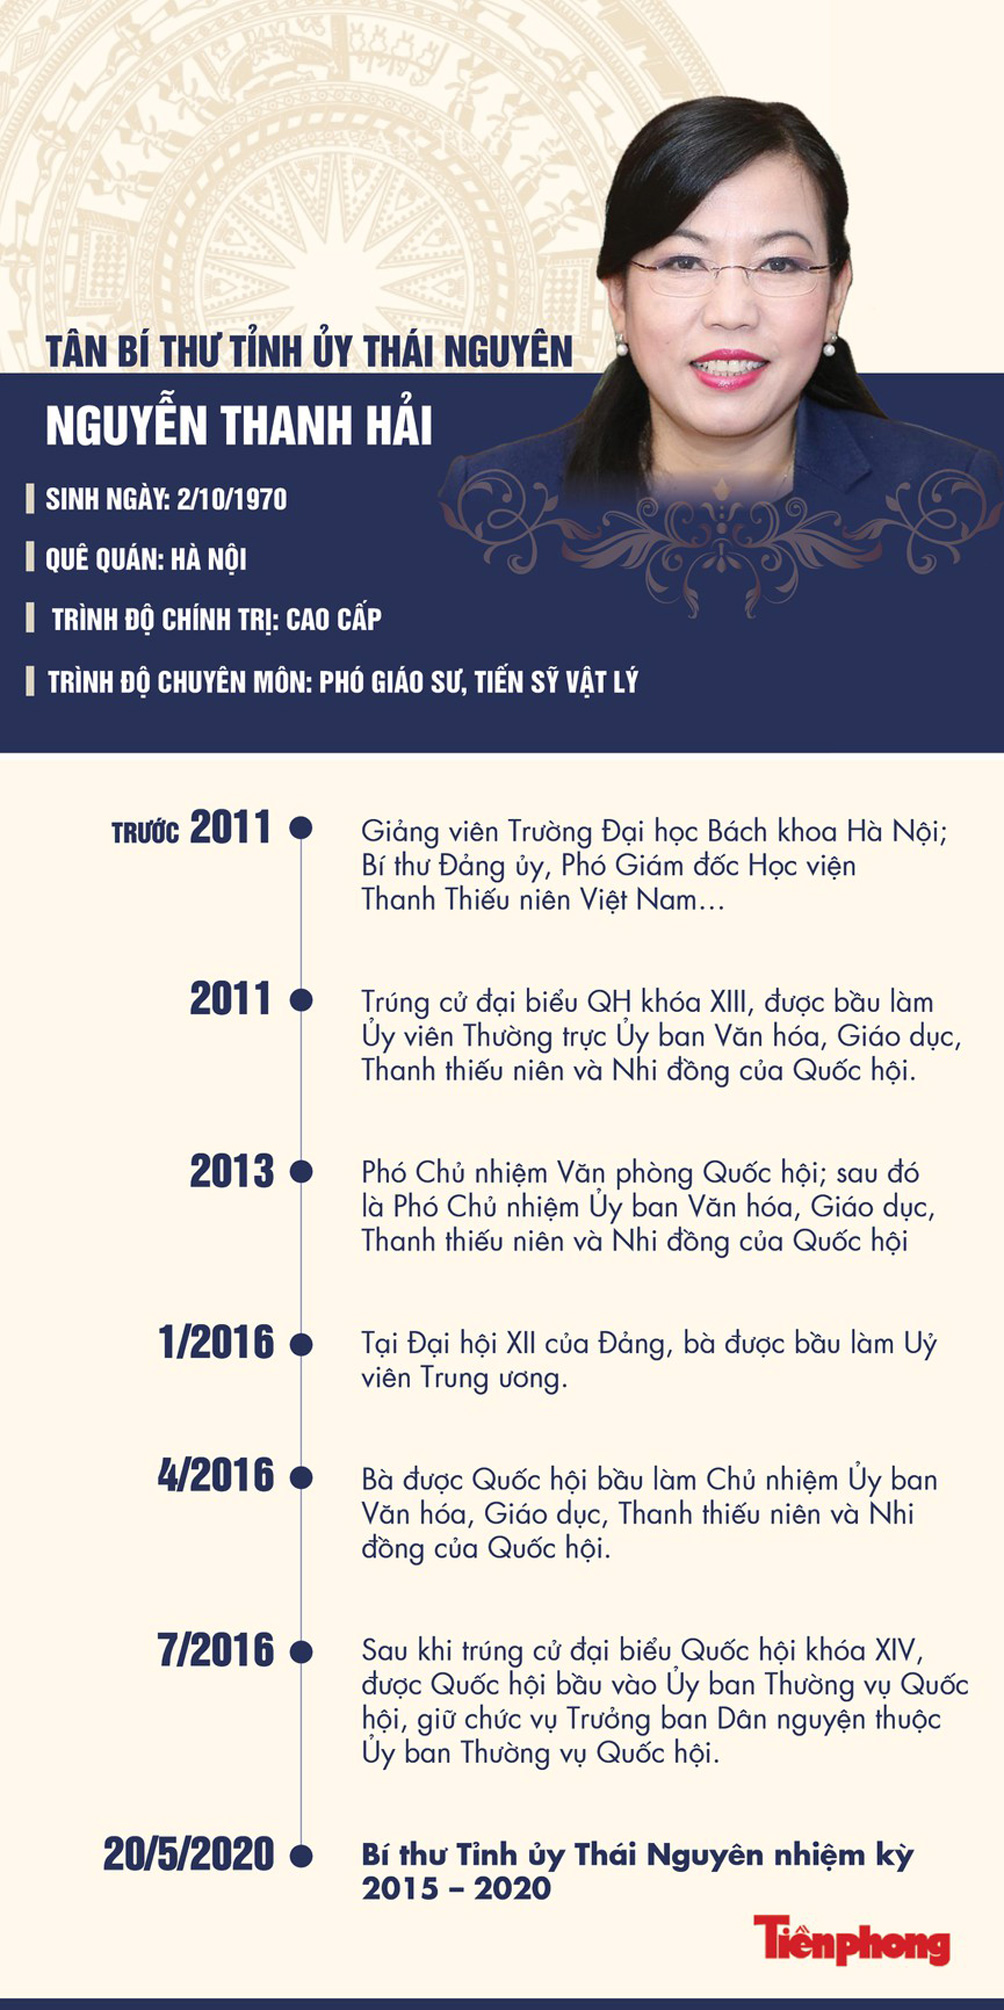 Chân dung tân Bí thư Tỉnh uỷ Thái Nguyên Nguyễn Thanh Hải - 1